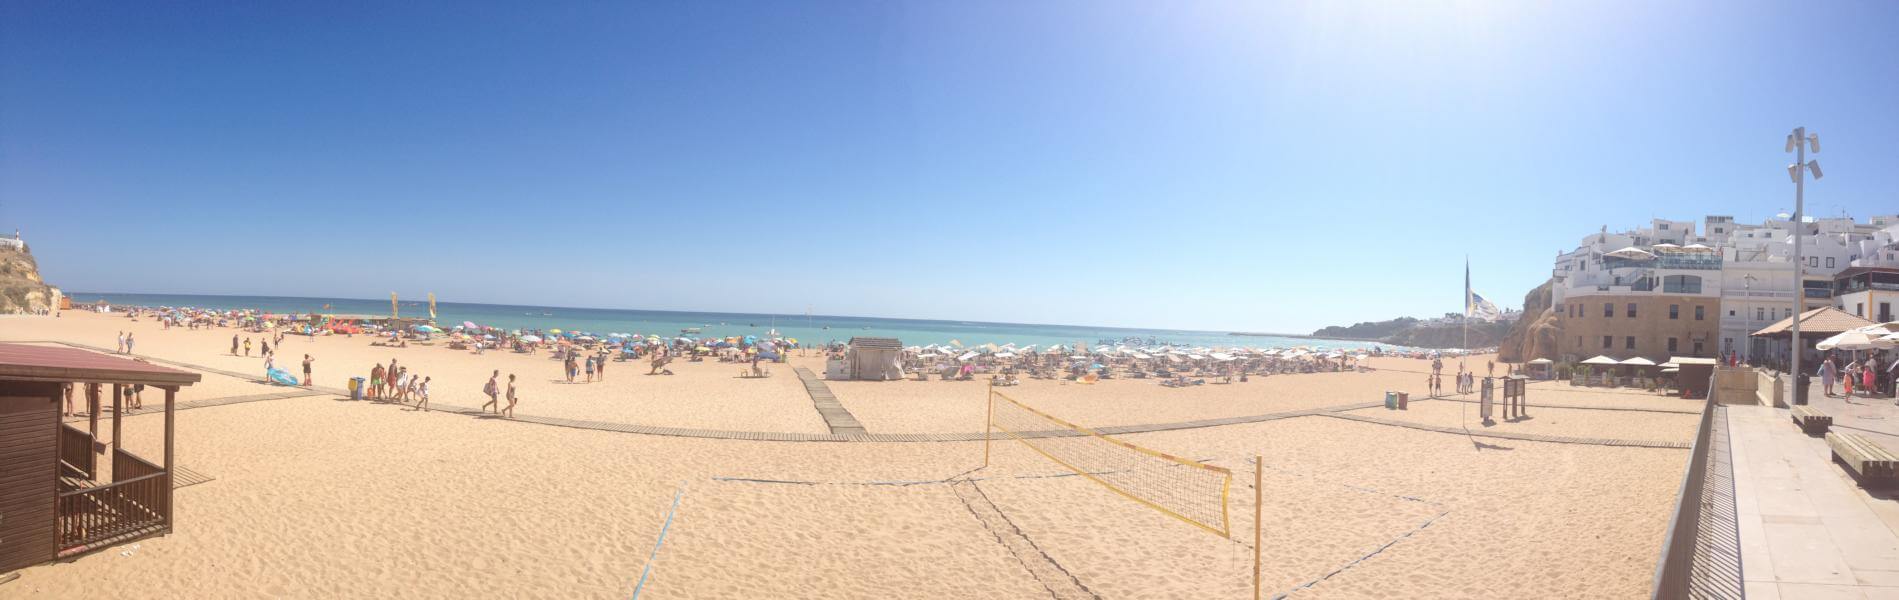 Albufeira Strand, Algarve